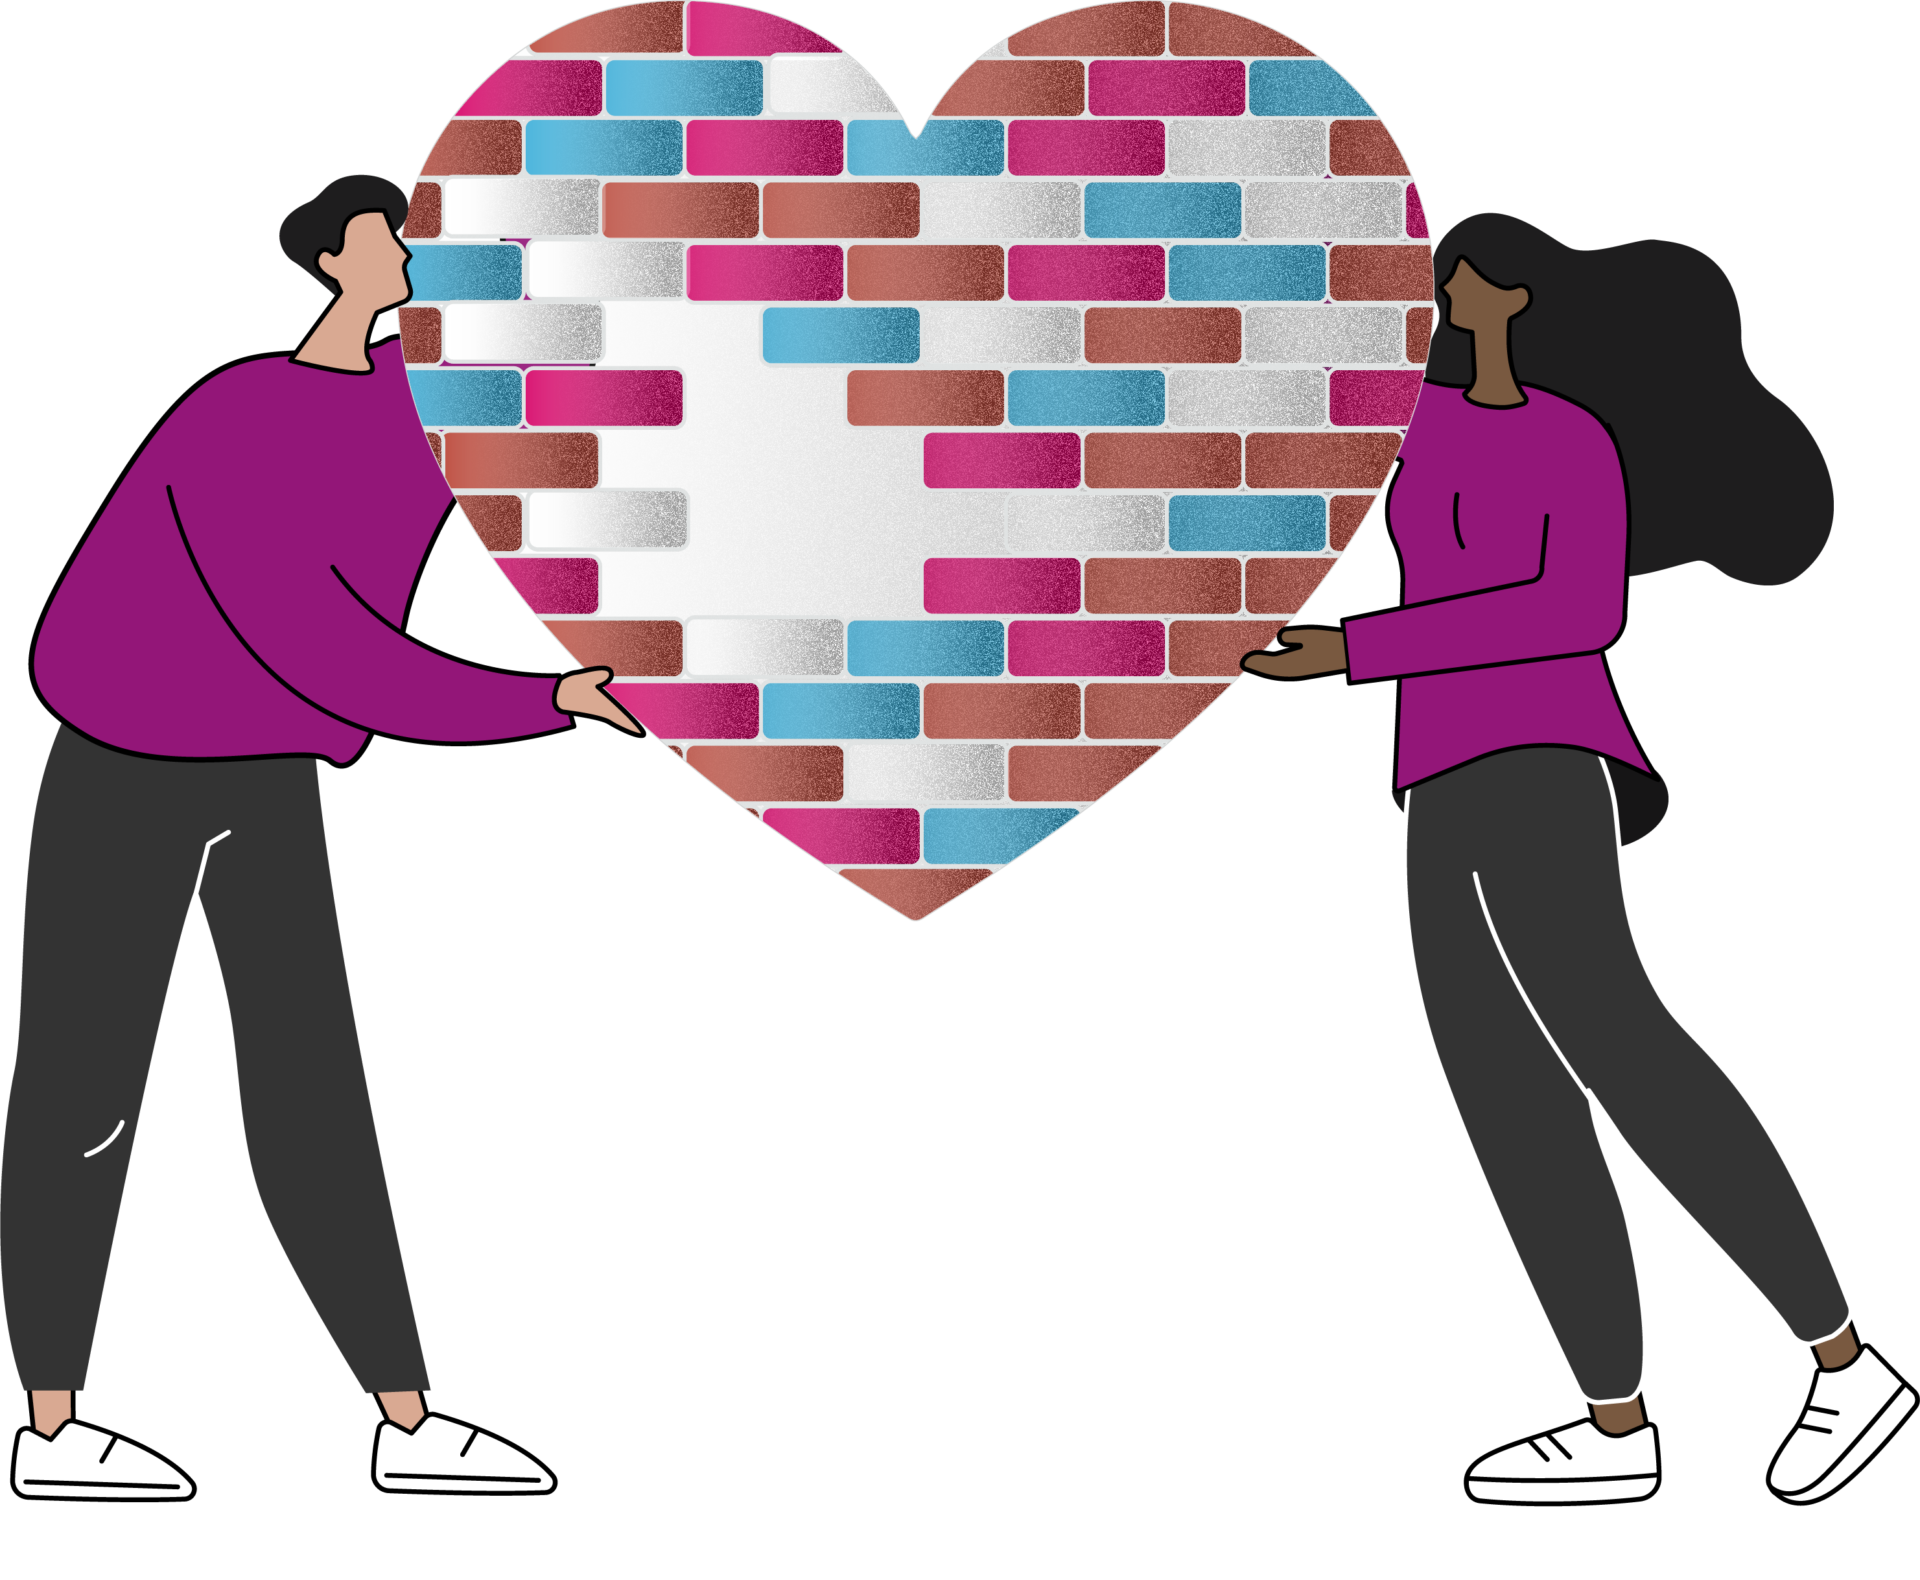 Arte ilustrativa da campanha "Construindo um Sonho: Tijolo por Tijolo", com fundo branco, ao lado esquerdo um homem branco e do lado direito uma mulher seguram juntos o grande coração formado por tijolos nas cores branco, azul e rosa.